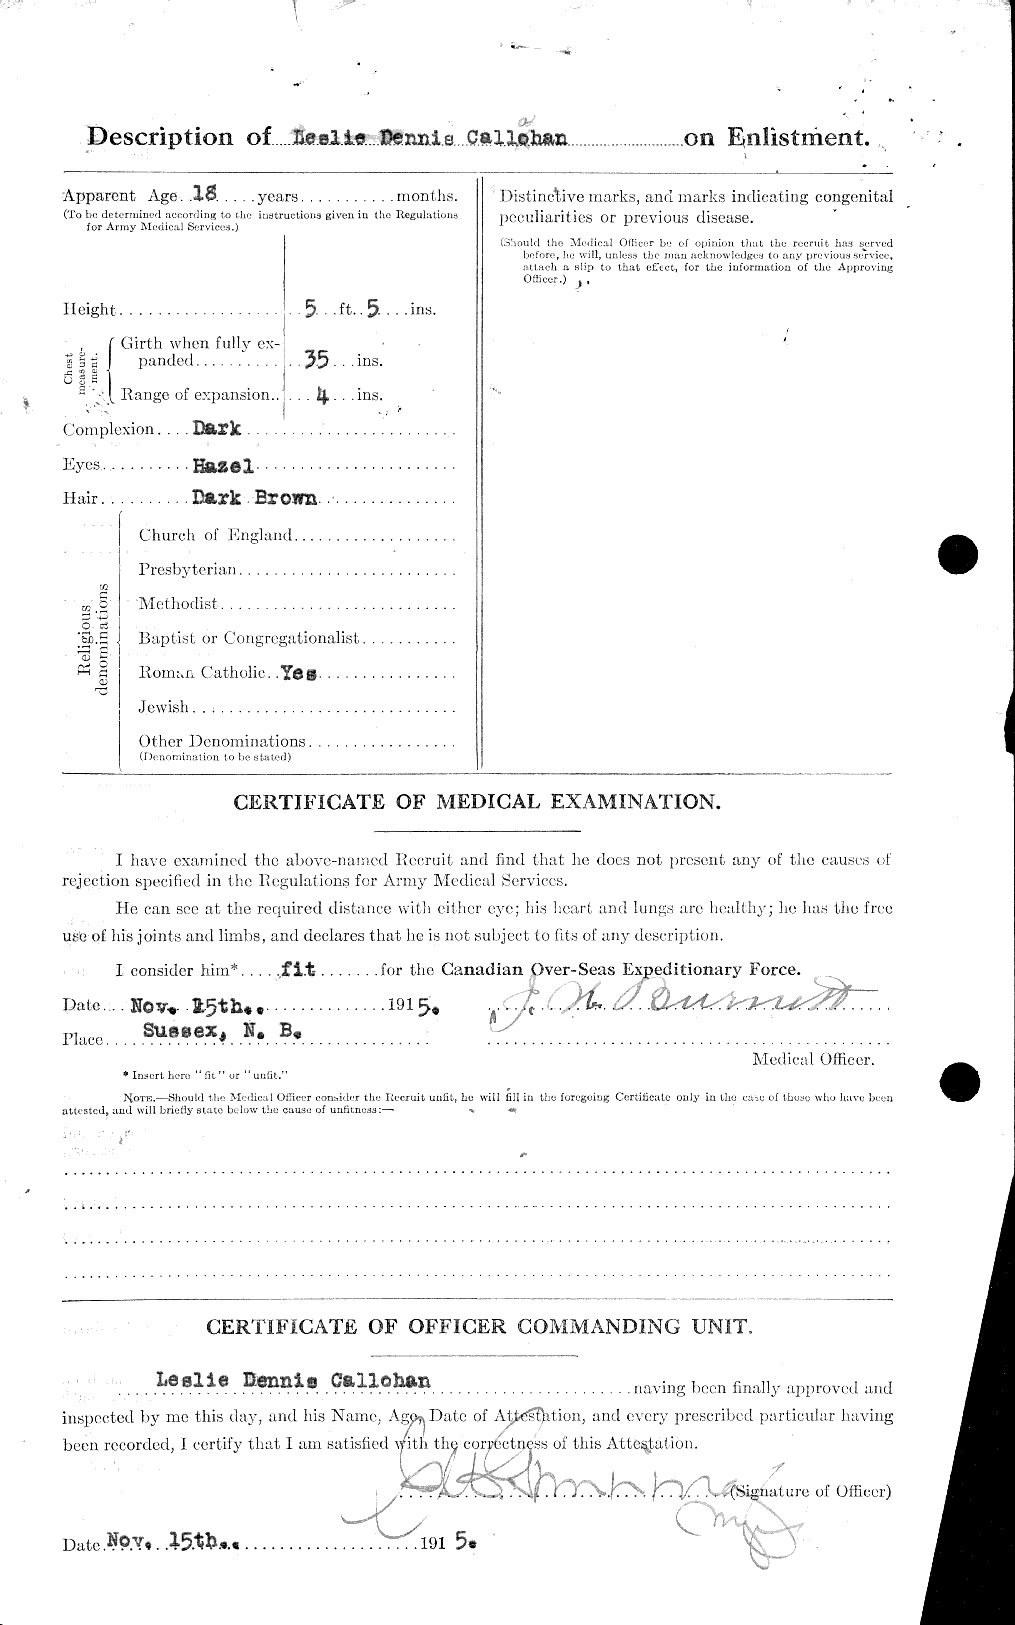 Dossiers du Personnel de la Première Guerre mondiale - CEC 000640b